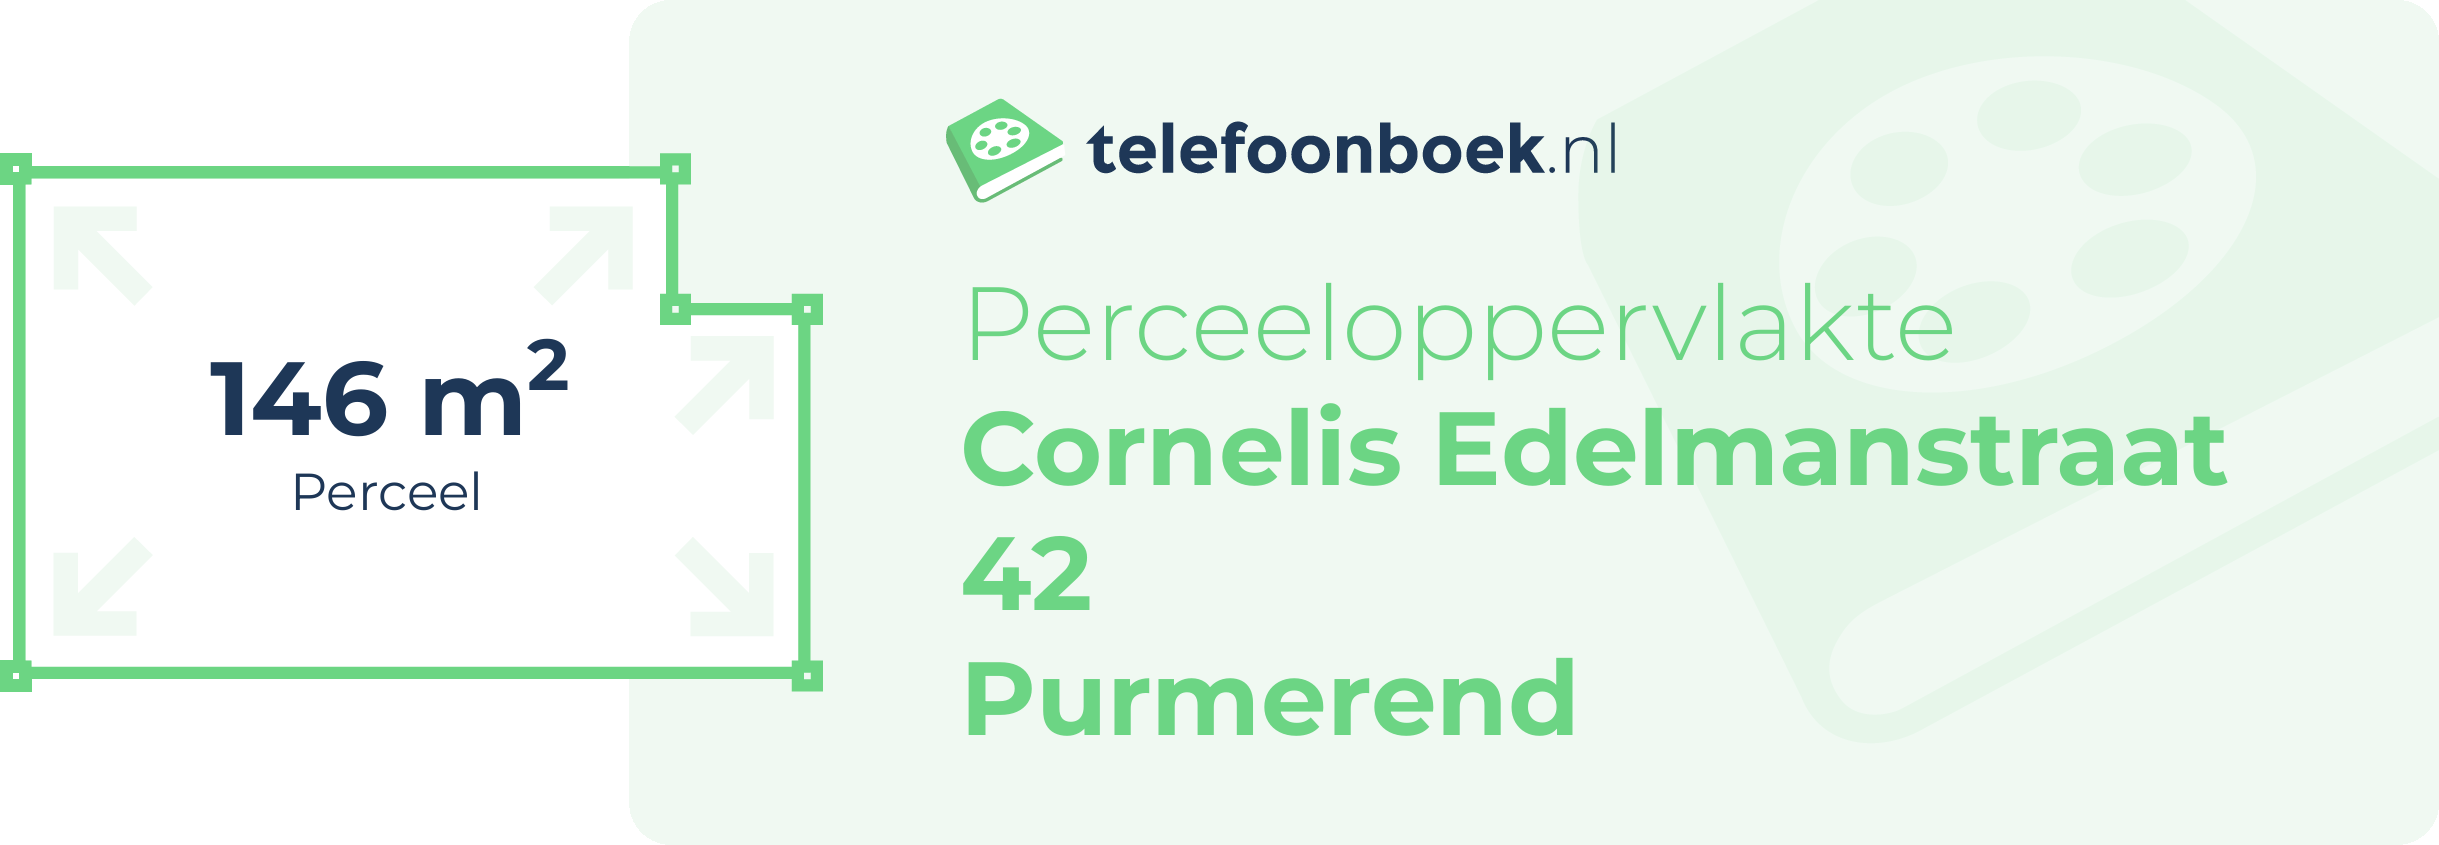 Perceeloppervlakte Cornelis Edelmanstraat 42 Purmerend